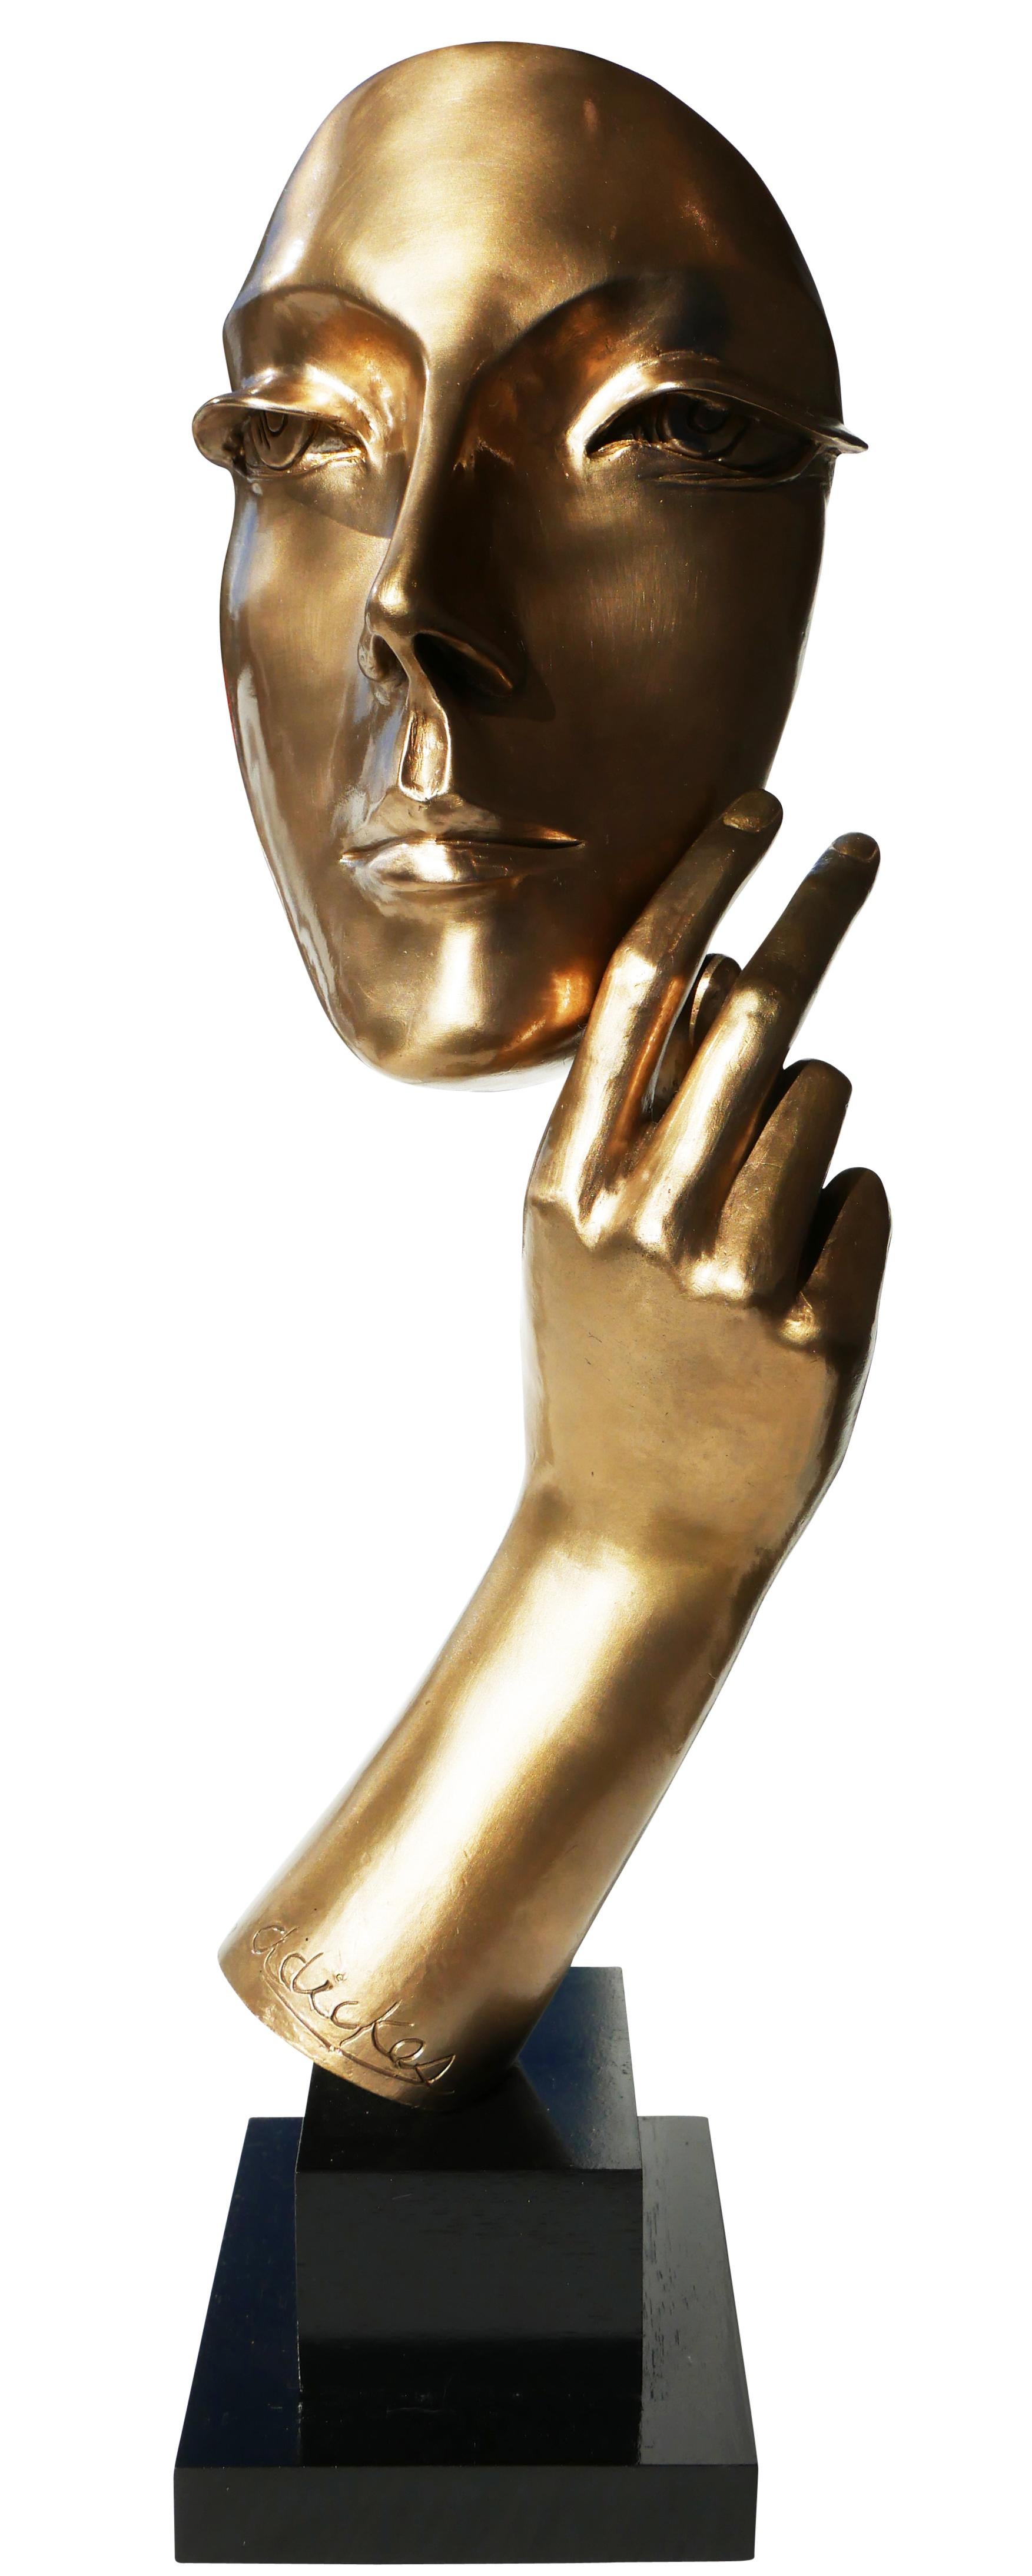 Face féminine moderniste abstraite avec bras sculpté en bronze